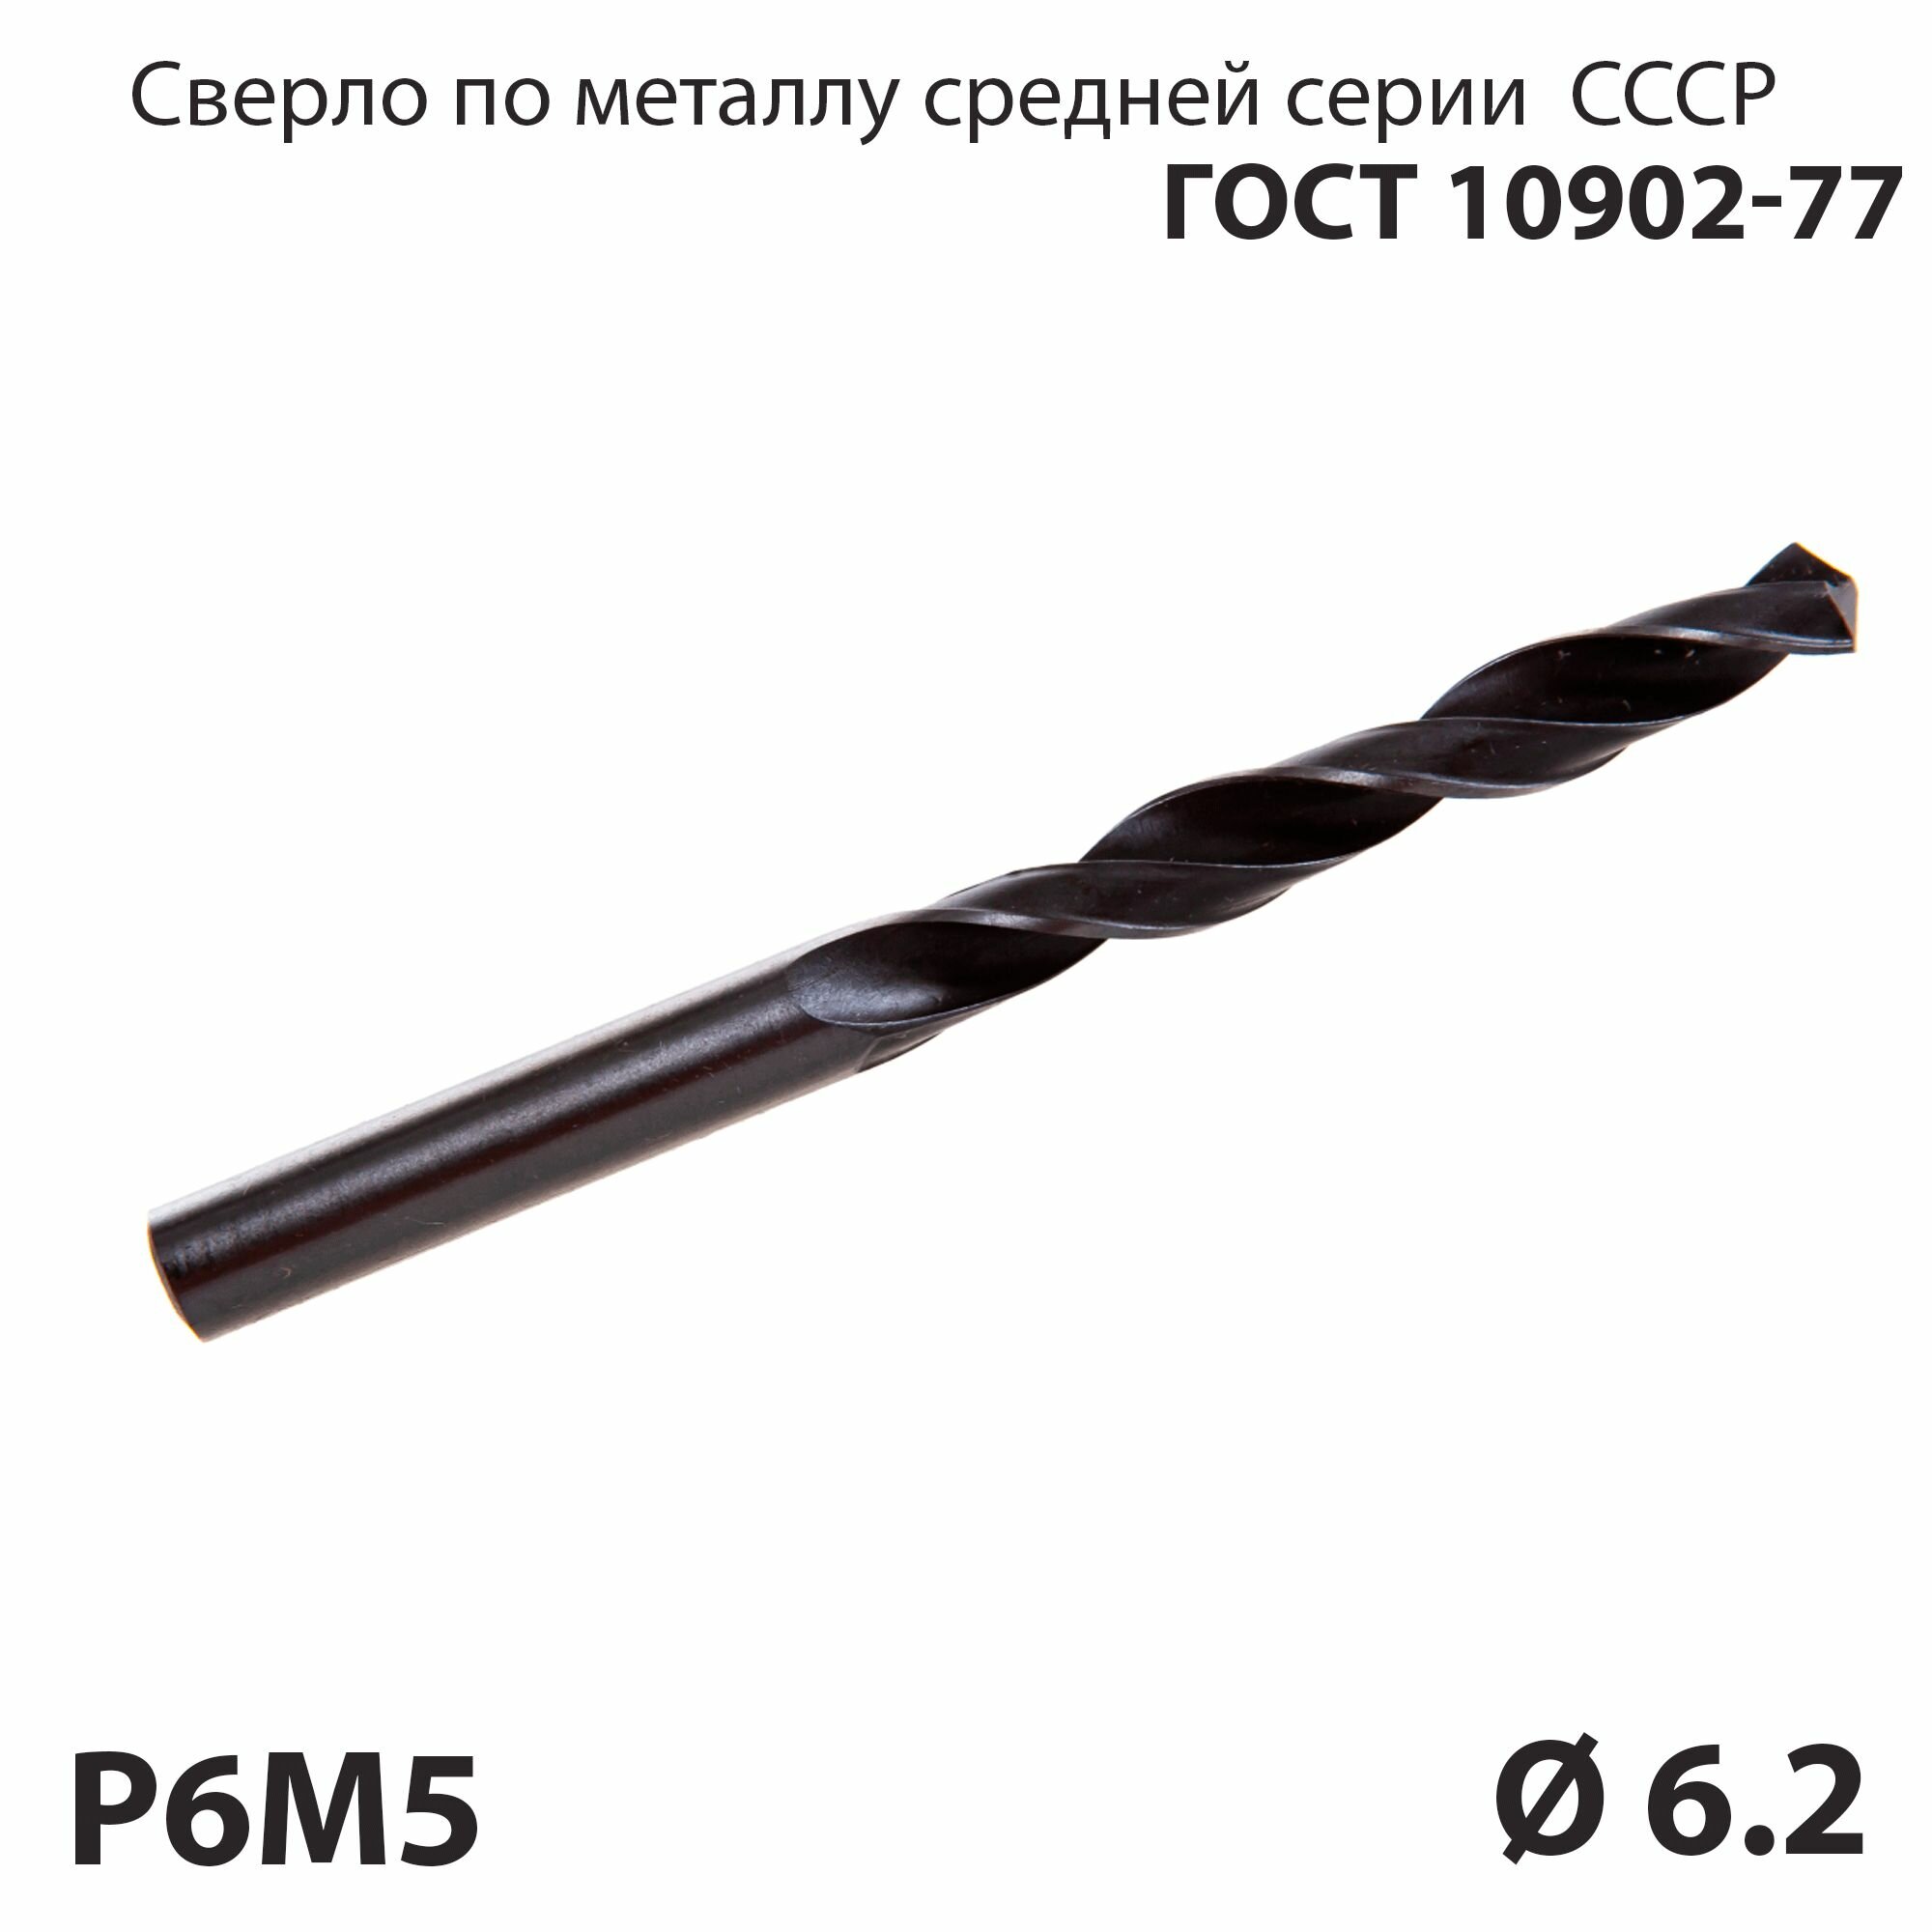 Сверло по металлу 6,2 мм средней серии P6М5 СССР ГОСТ 10902-77 (спиральное правое, ц/х)